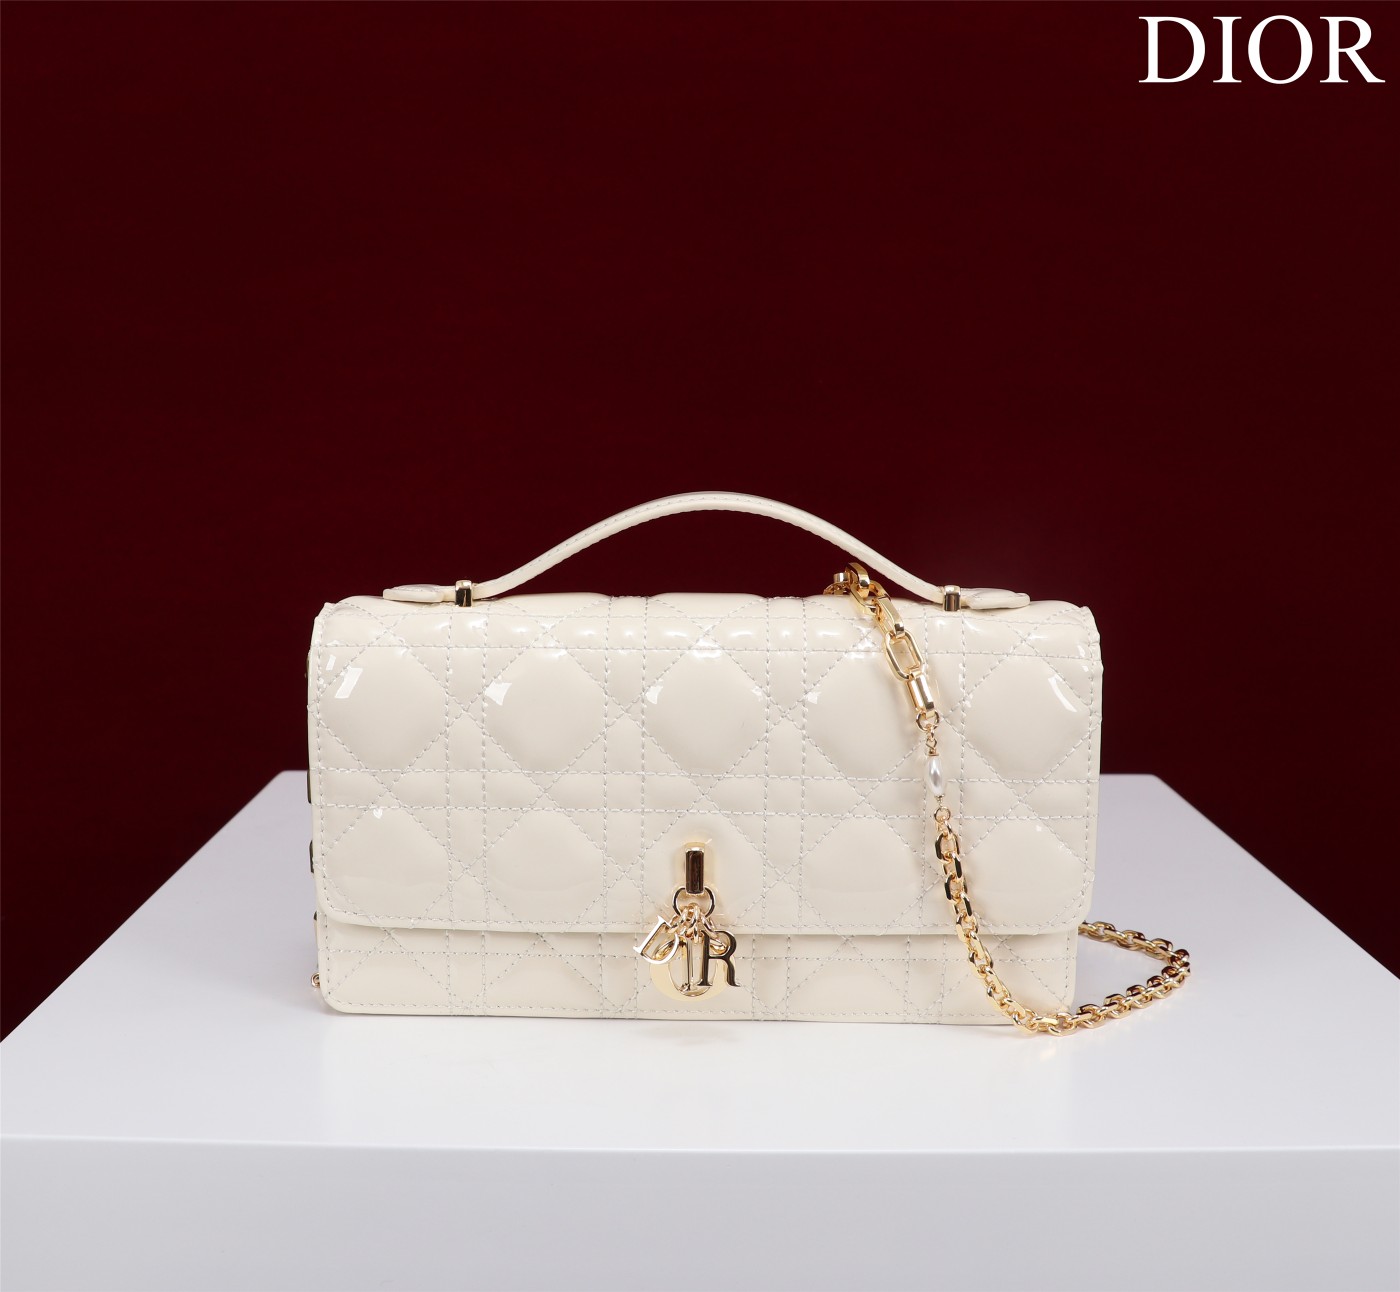 迪奥Dior顶级进口原厂牛皮链条包️️DIOR手袋于迪奥二零二三春夏成衣系列发布秀精彩亮相重新诠释迪奥别